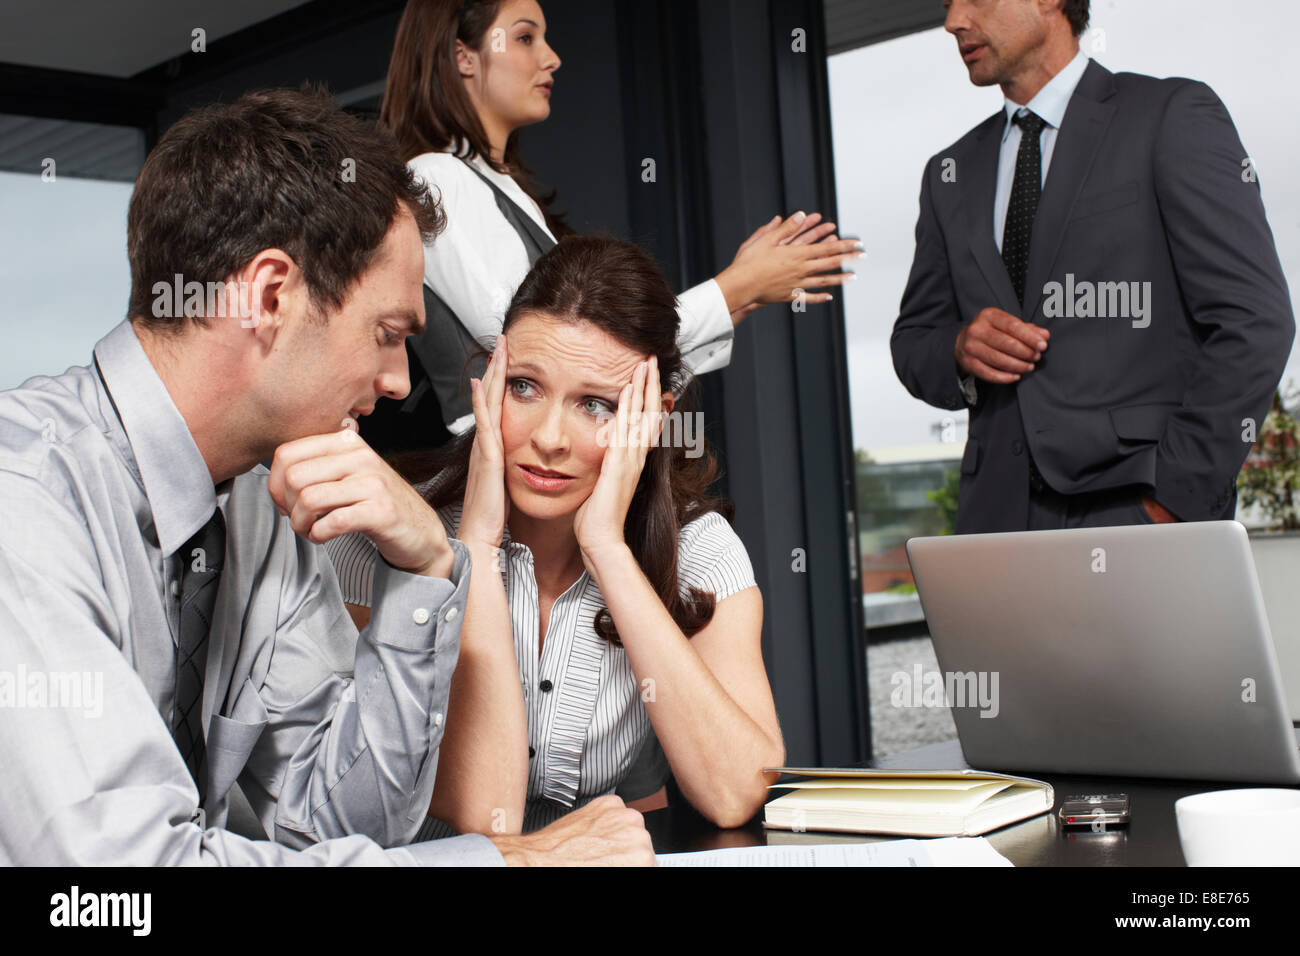 Какой самый разговор. Люди в офисе разговаривают. Шум в офисе. Женщины ругаются в офисе. Общение коллег в офисе.